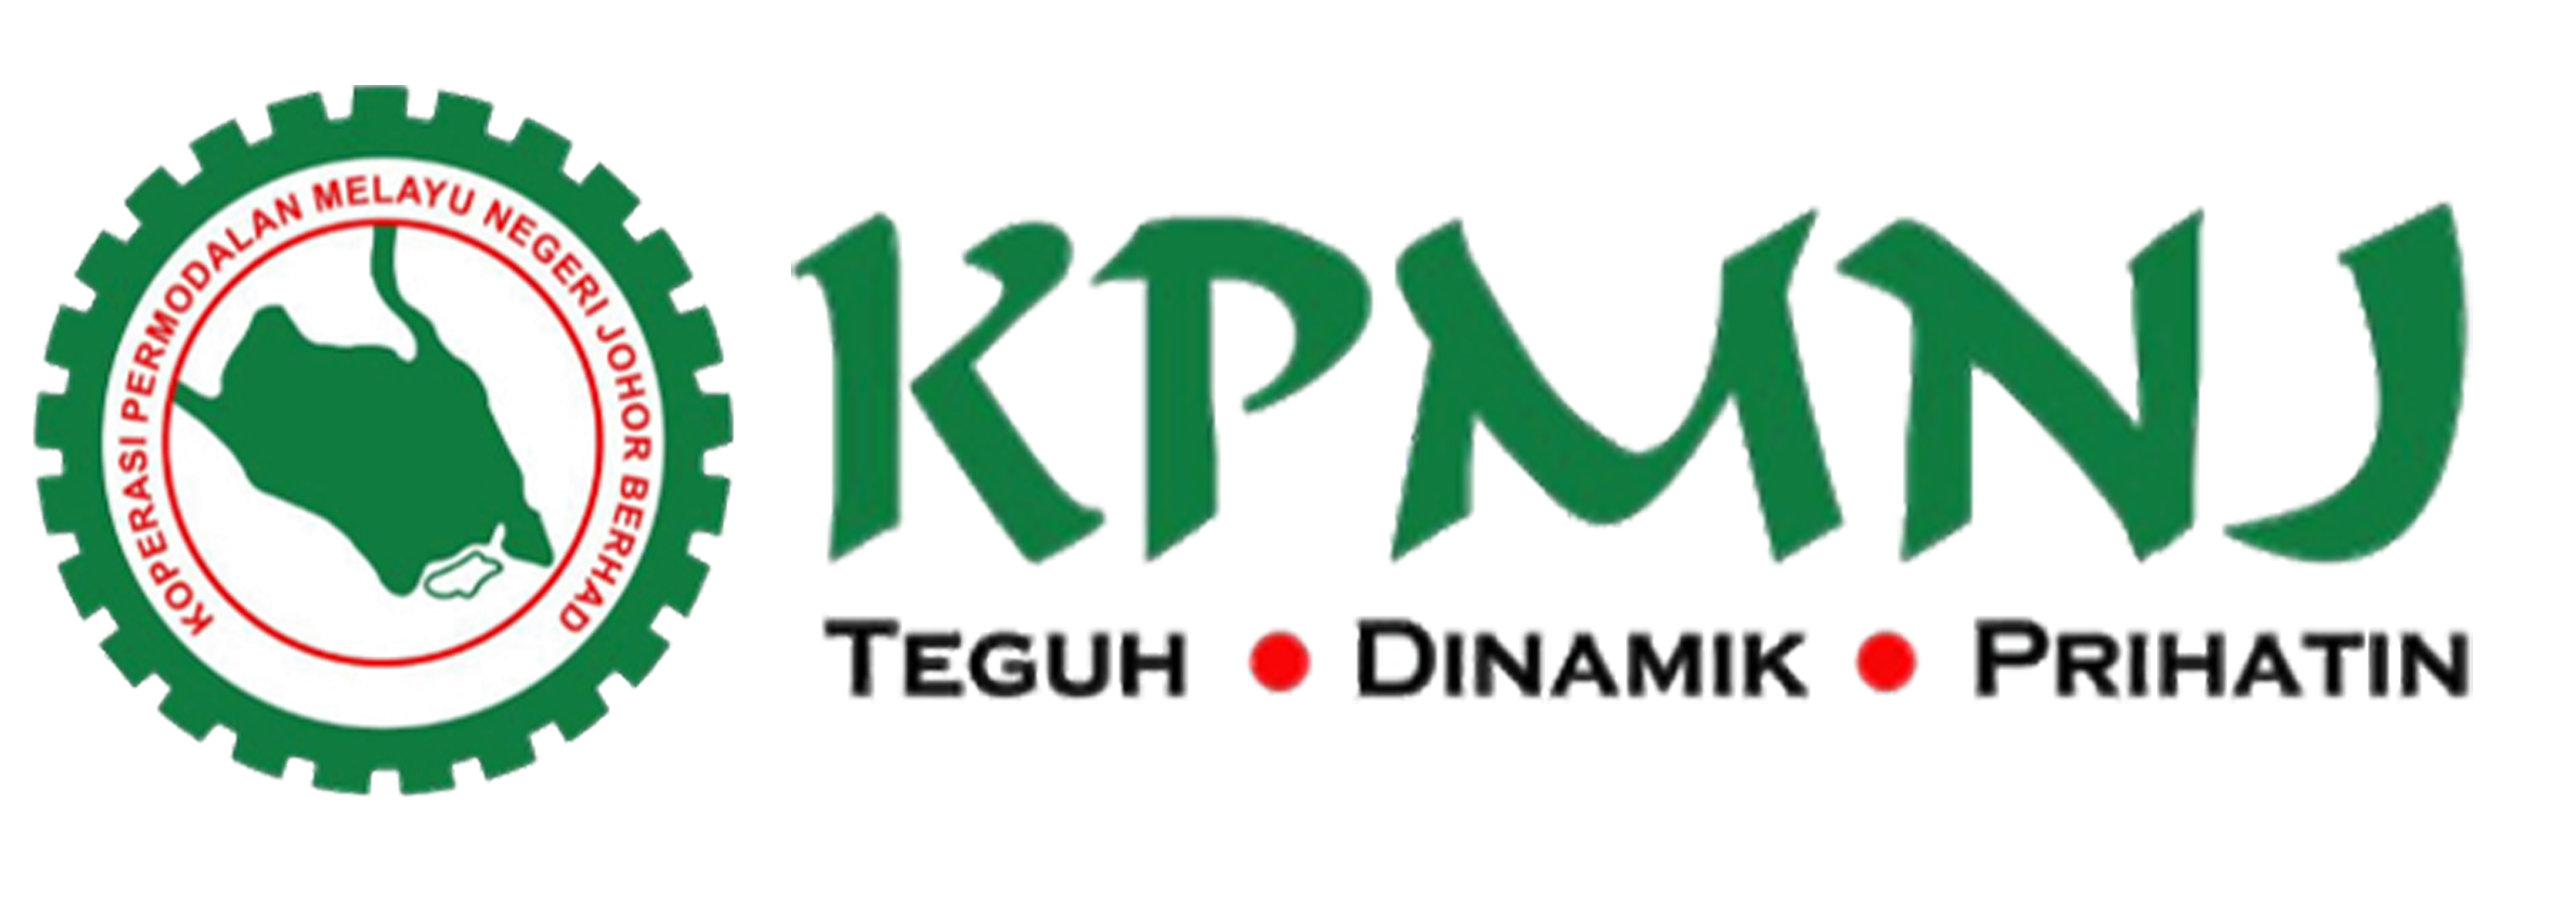 KPMNJ – Koperasi Permodalan Melayu Negeri Johor